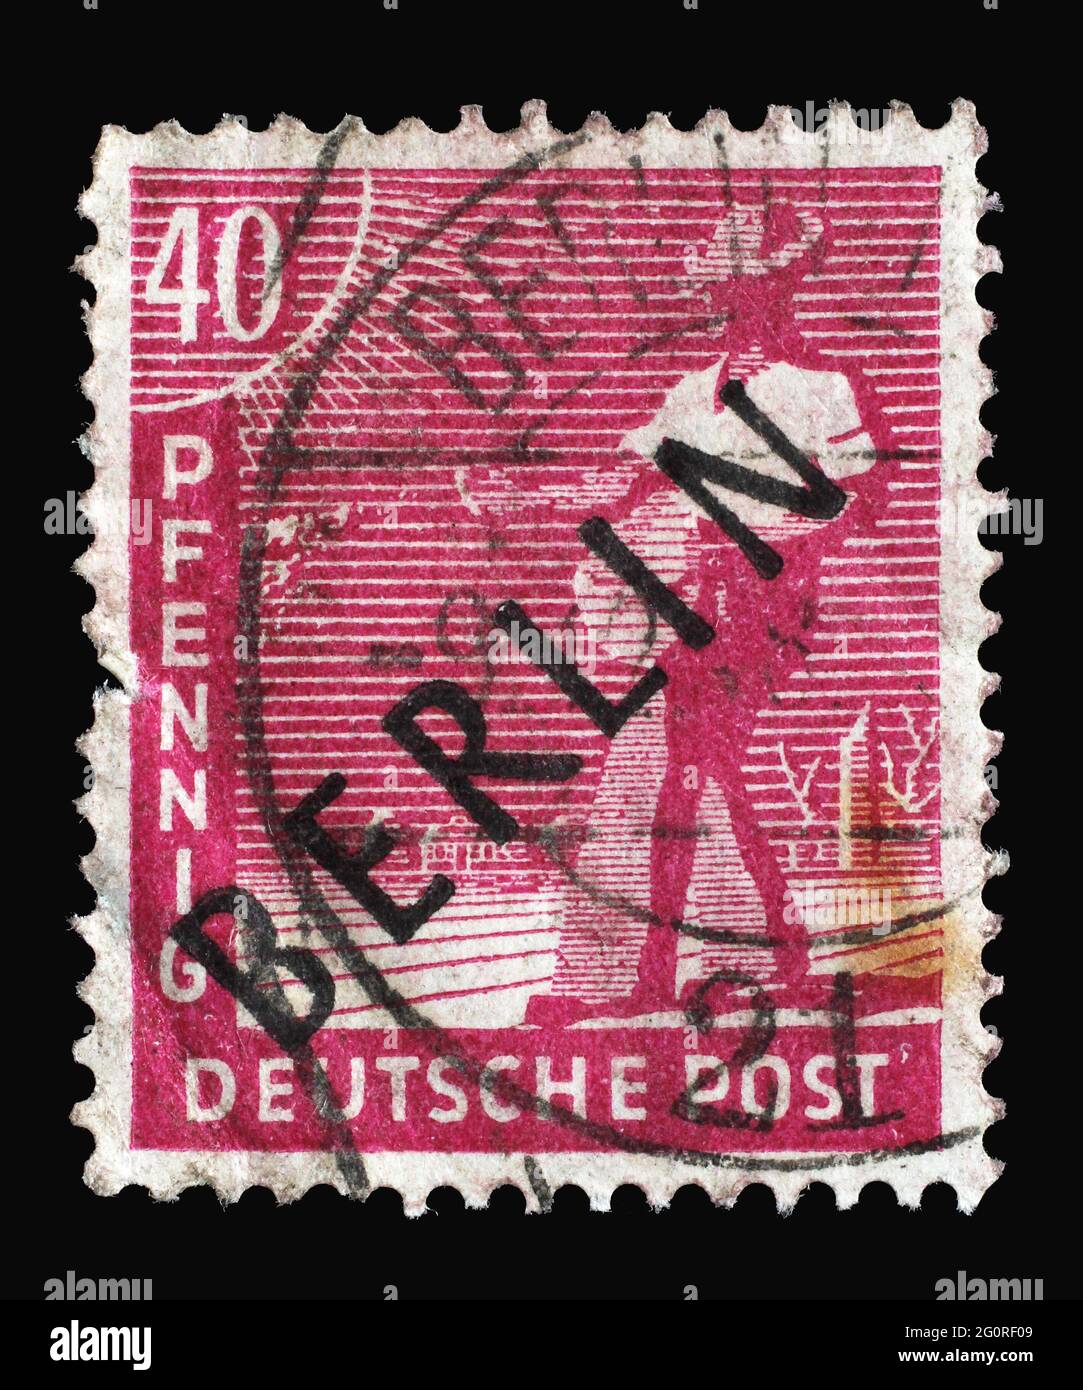 Briefmarke gedruckt in Deutschland, Berlin in Schwarz Aufdruck, amerikanisch-britisch-sowjetische Besatzung (Trizone) zeigt Sower, um 1948 Stockfoto